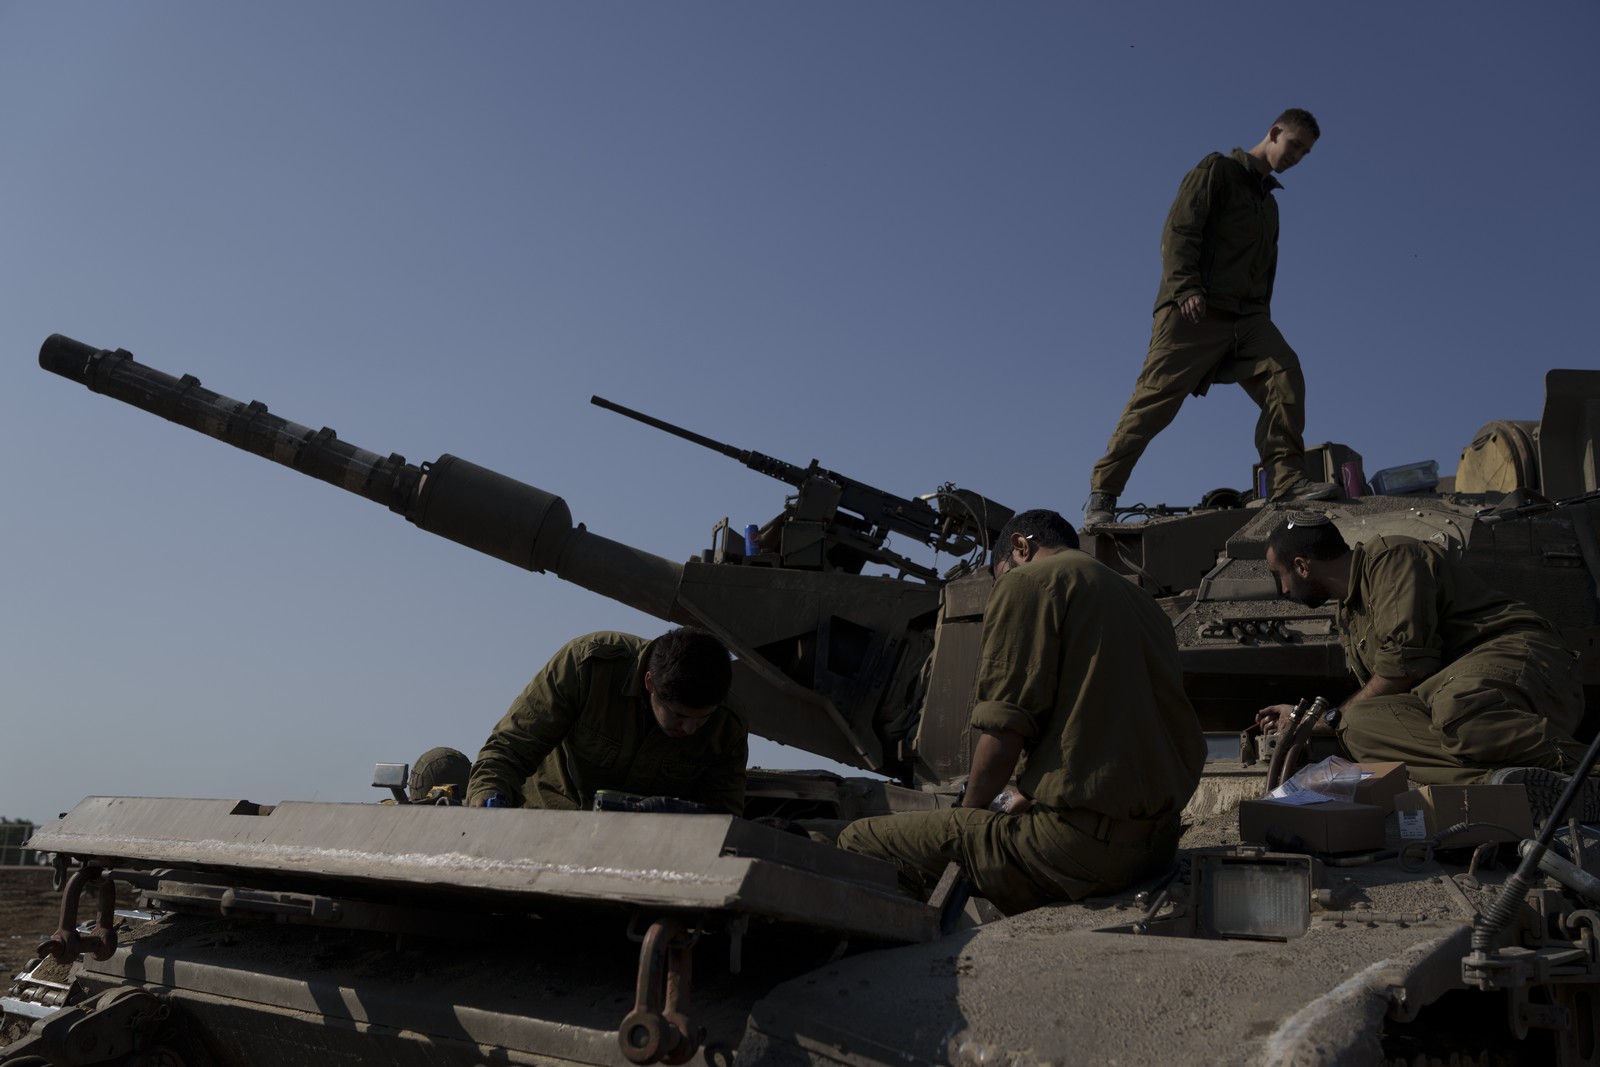 πόσα χρήματα κόστισε στο ισραήλ η αναχαίτιση της ιρανικής επίθεσης